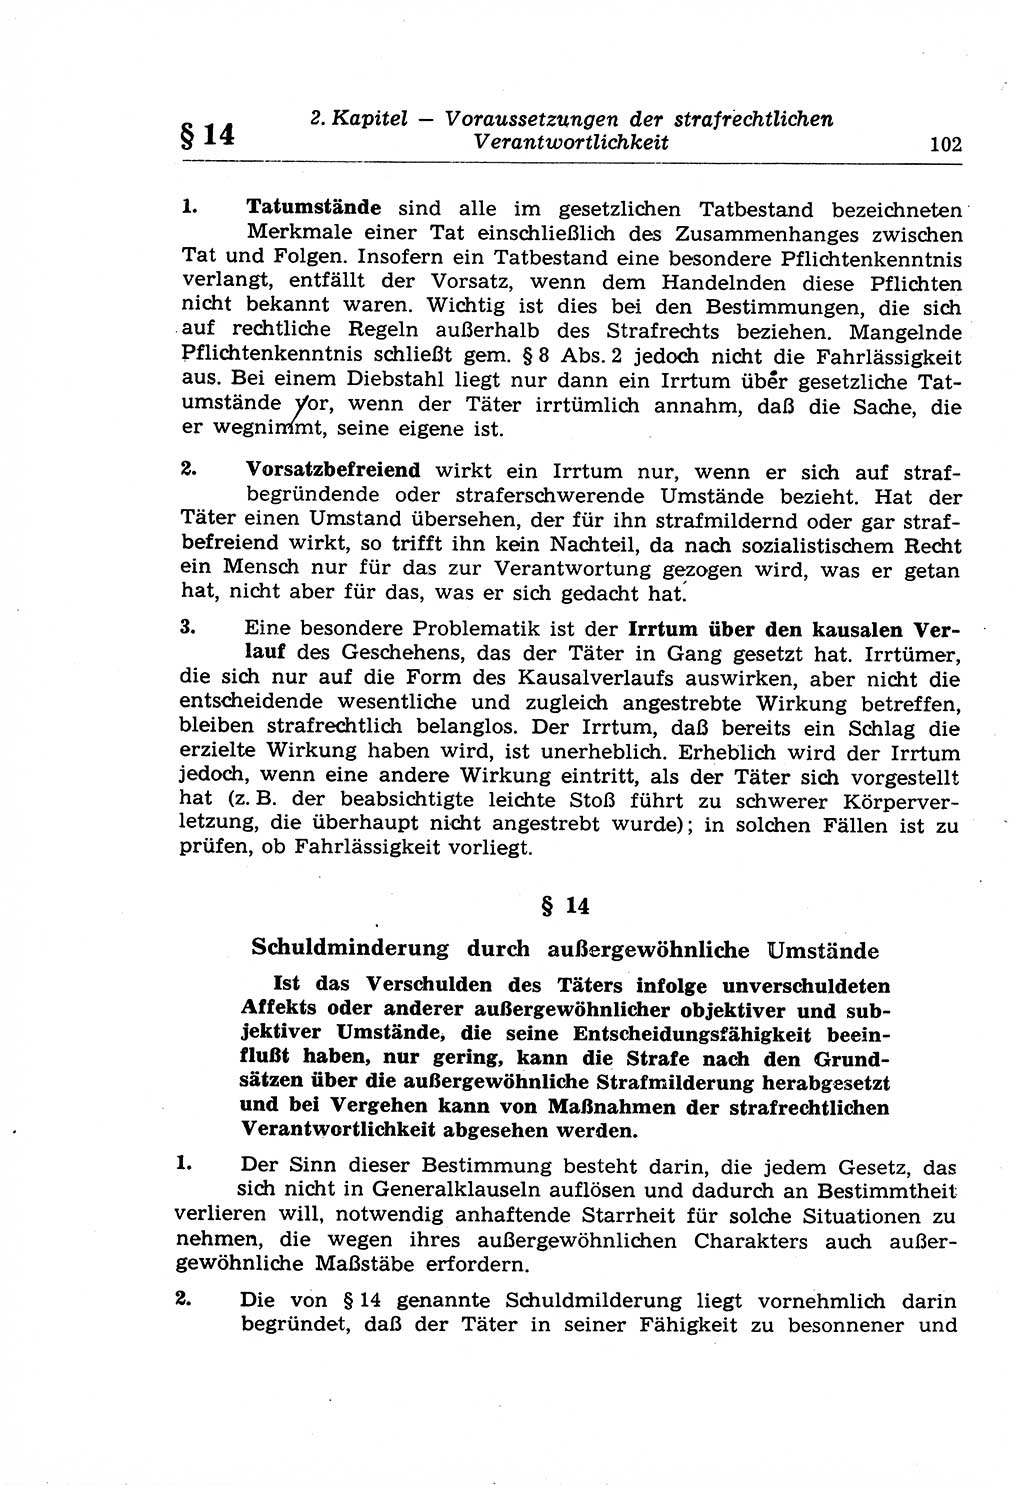 Strafrecht der Deutschen Demokratischen Republik (DDR), Lehrkommentar zum Strafgesetzbuch (StGB), Allgemeiner Teil 1969, Seite 102 (Strafr. DDR Lehrkomm. StGB AT 1969, S. 102)